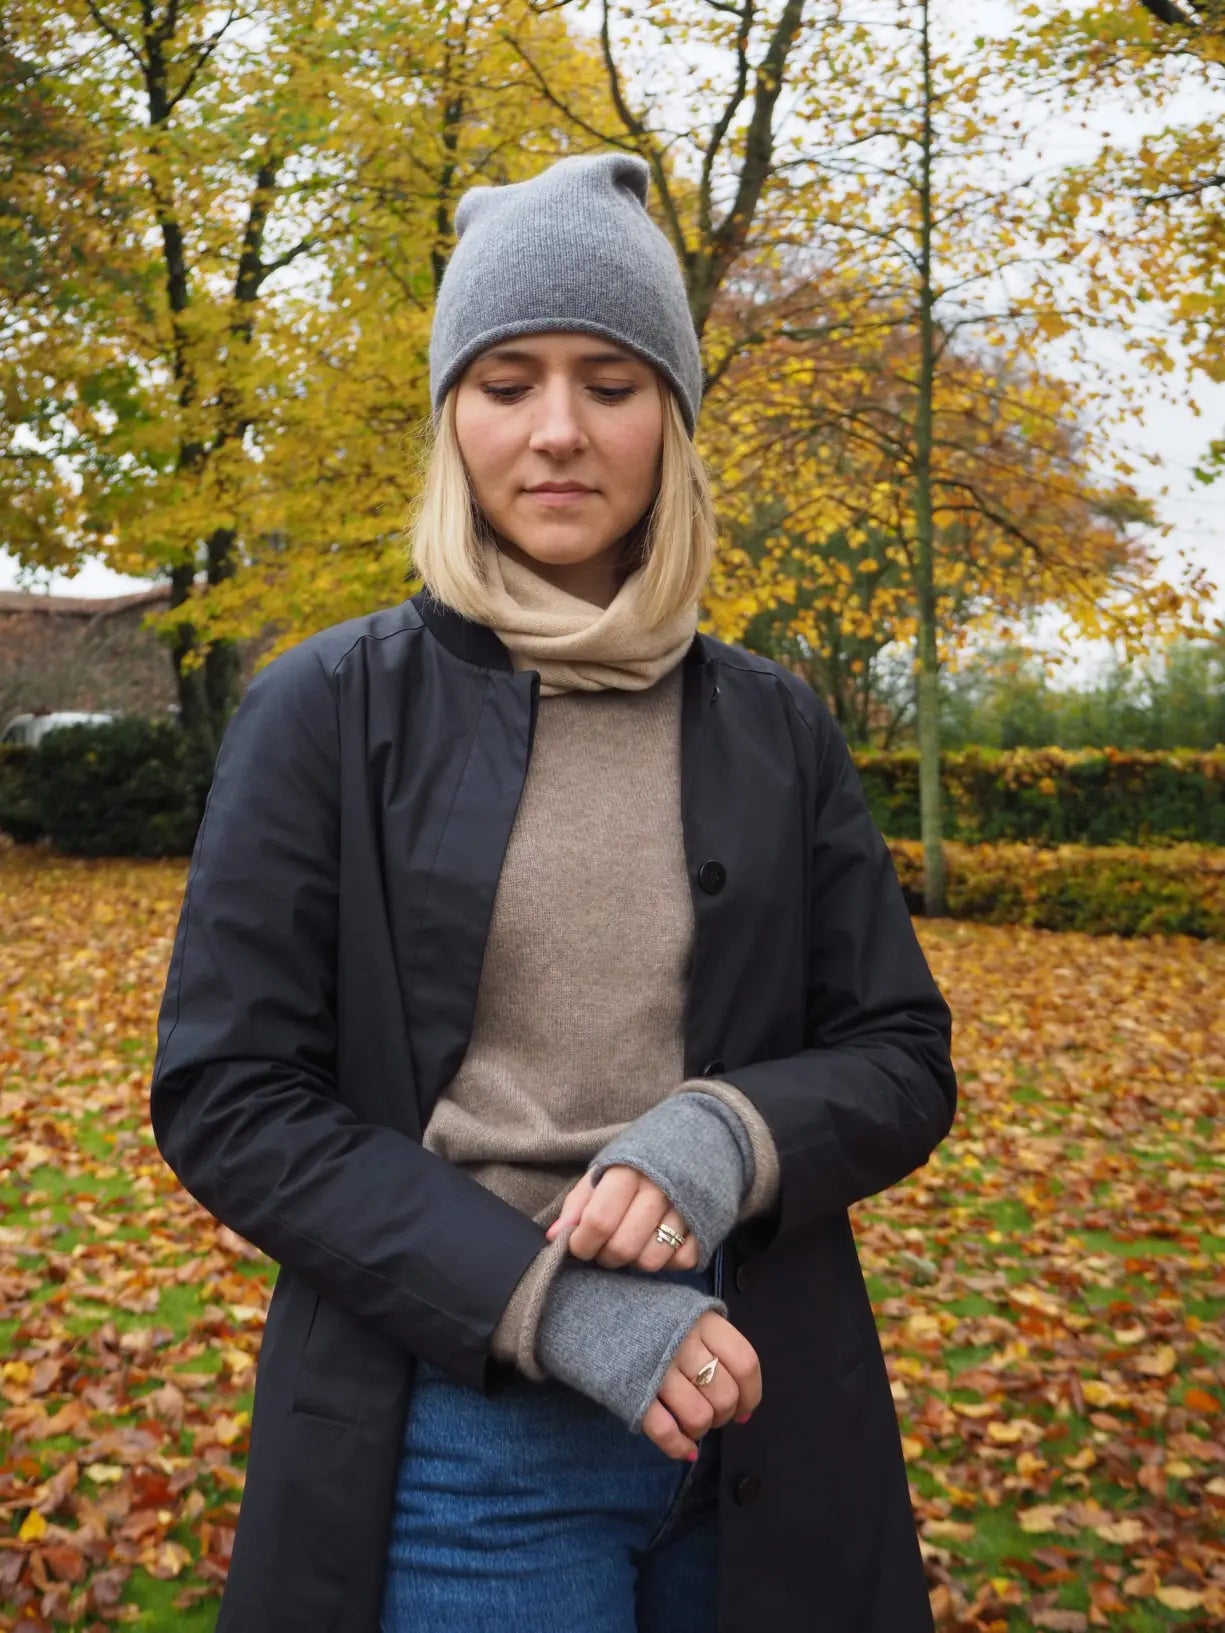 Miljøbillede af grå cashmere handsker på en kvinde